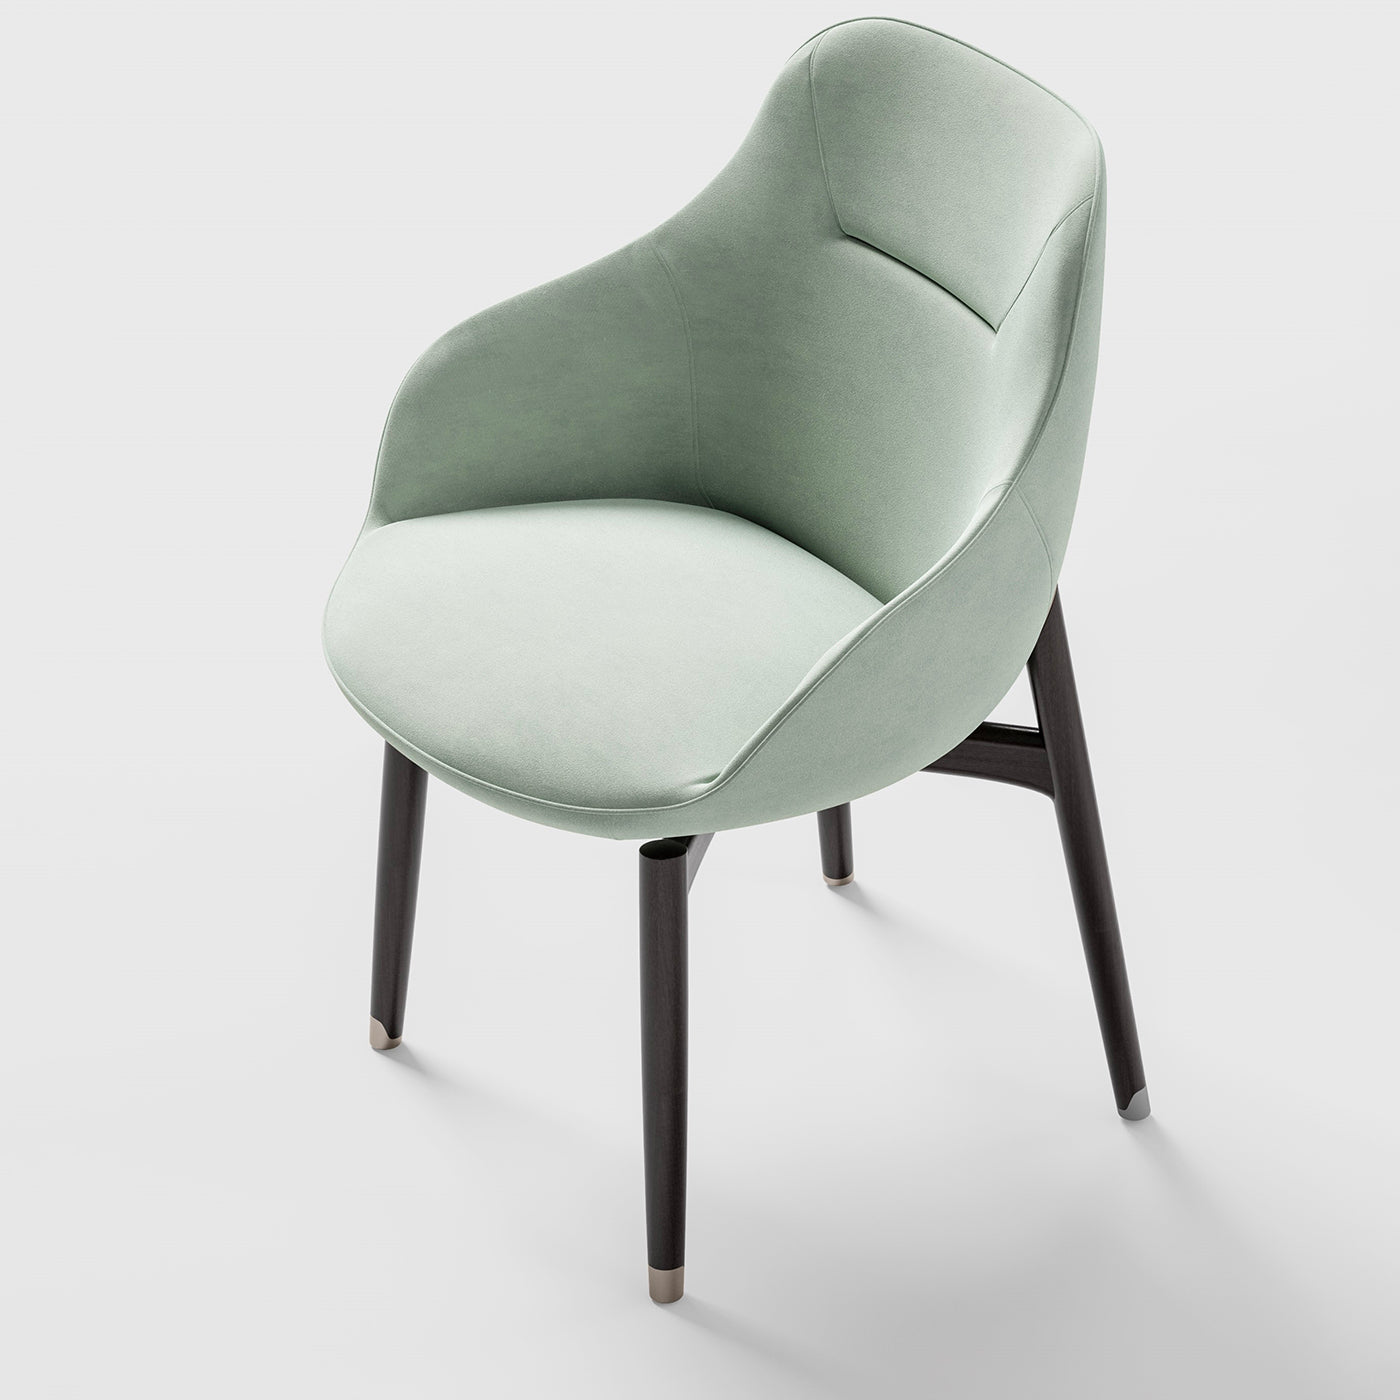 Light Green Velvet Fabric Chair - Alternative view 1